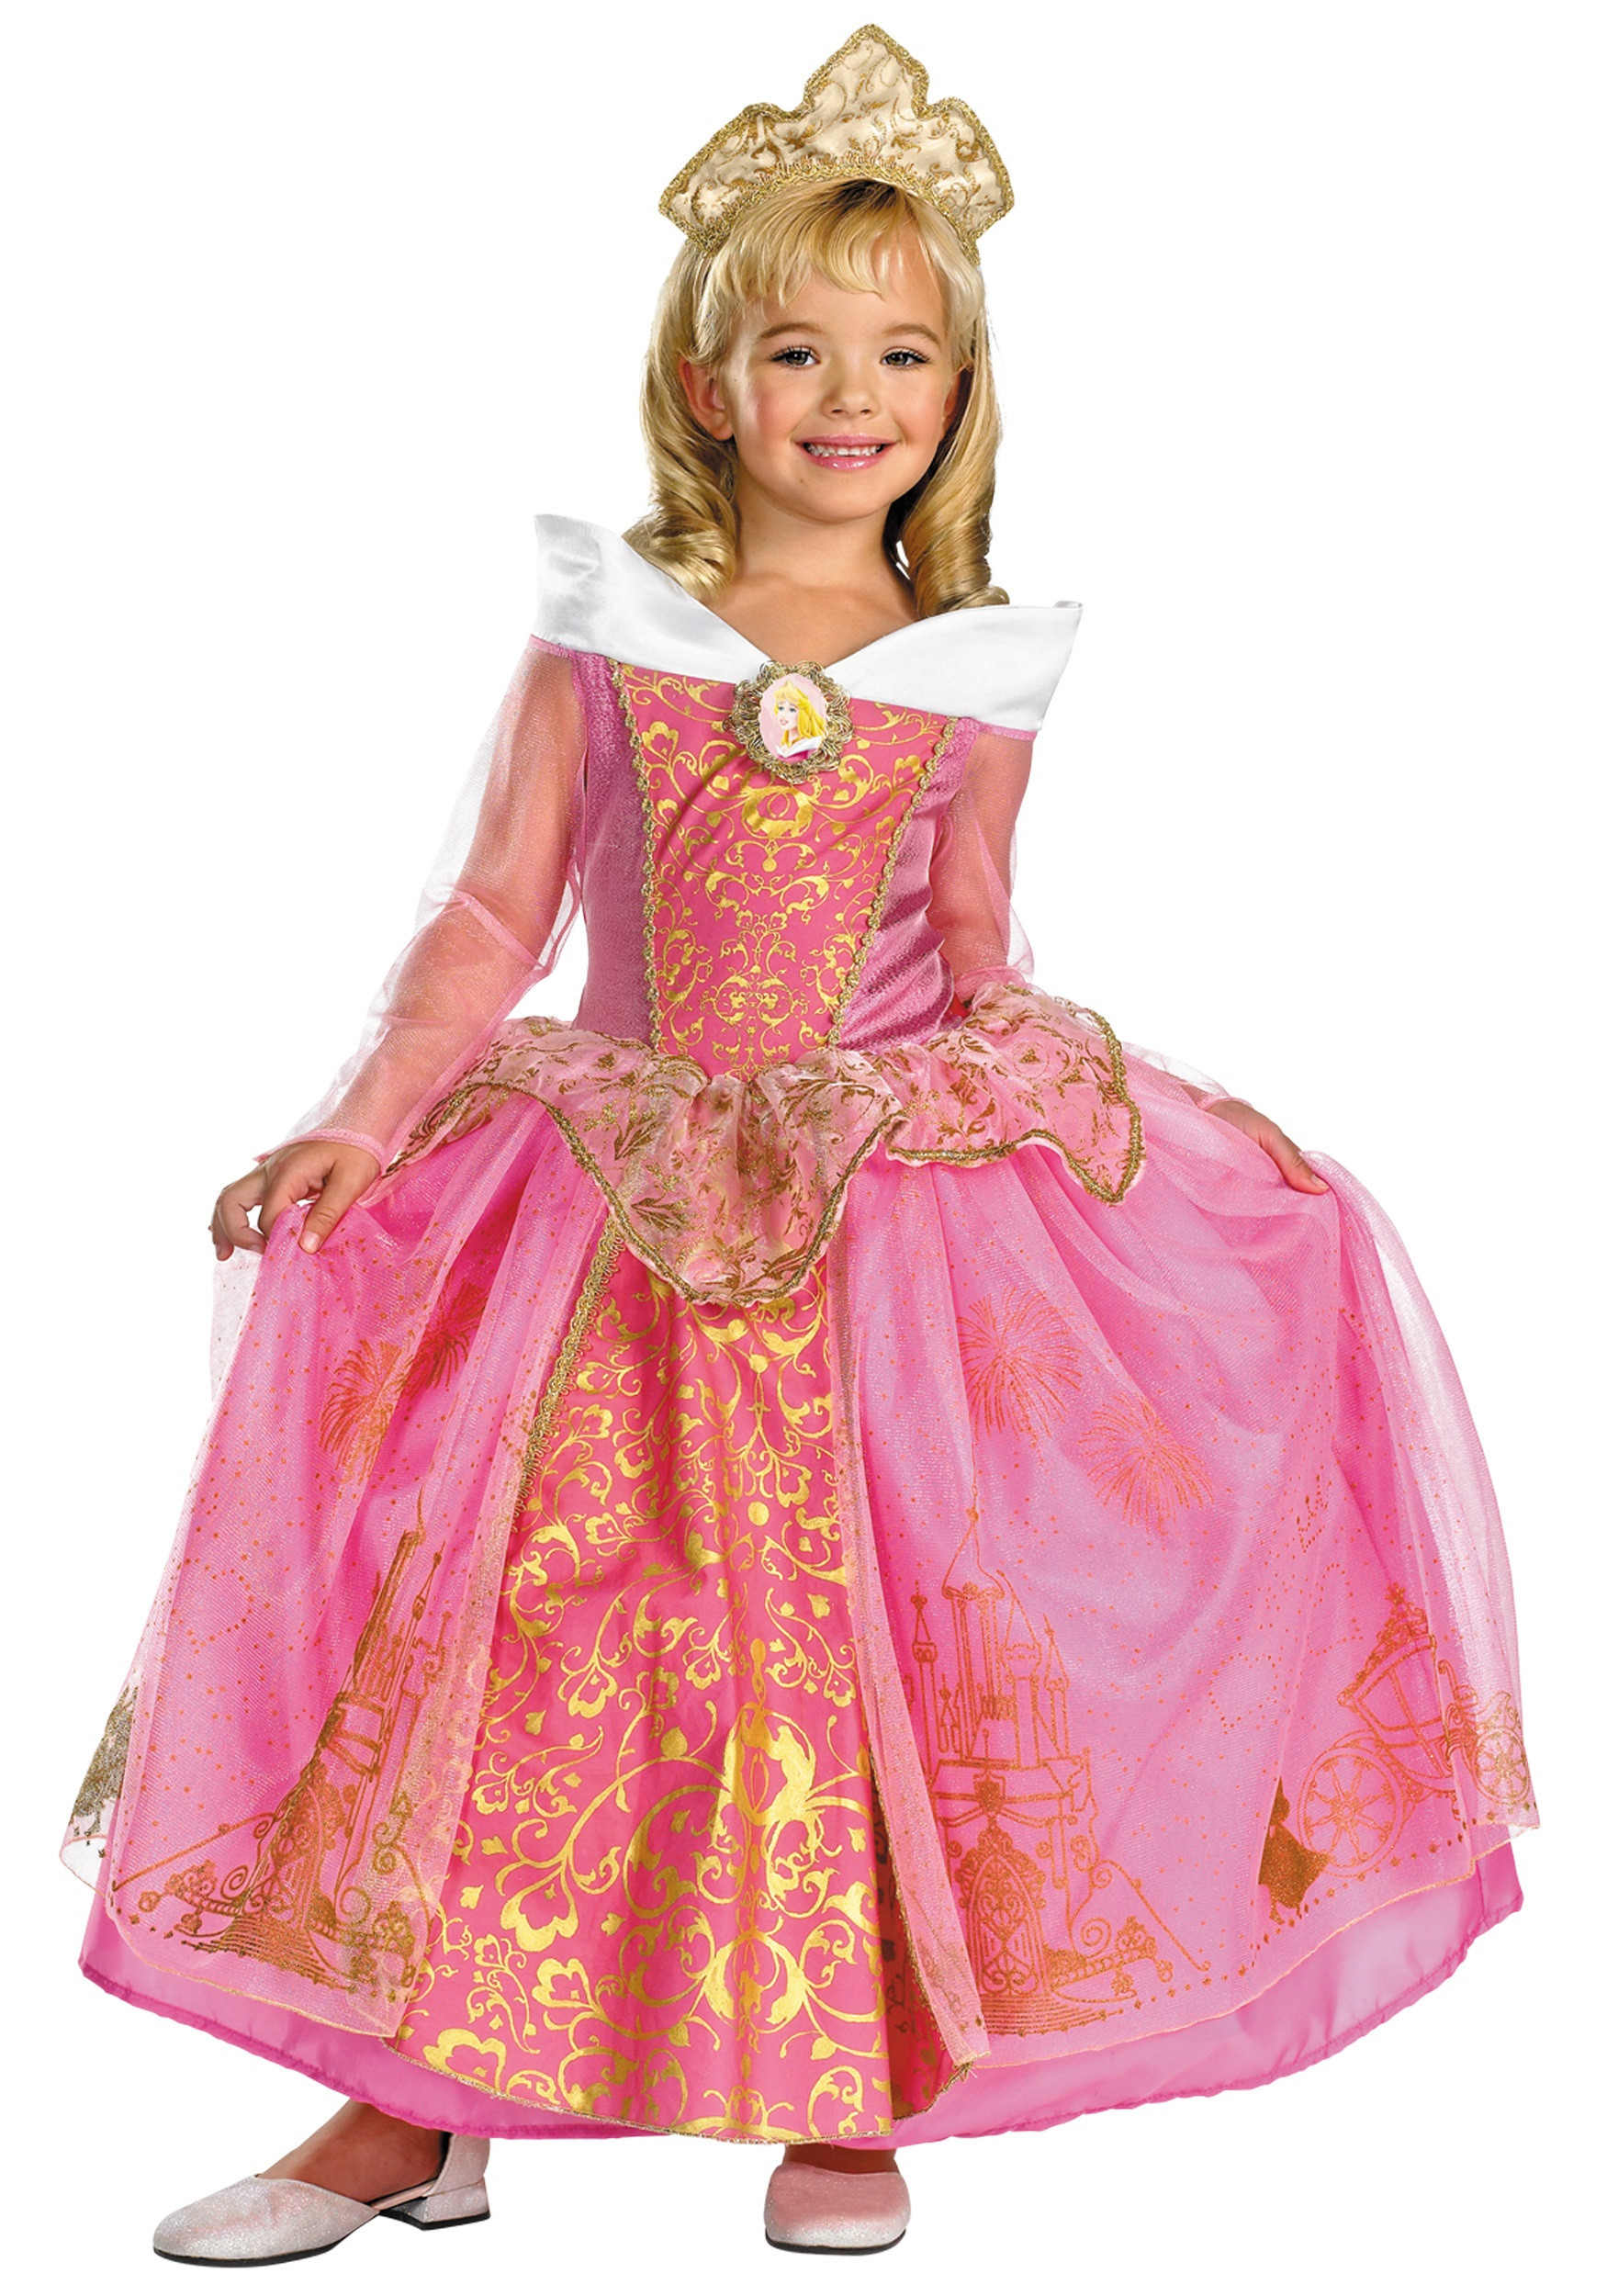 Best ideas about DIY Aurora Costume
. Save or Pin Kids Prestige Aurora Costume Now.